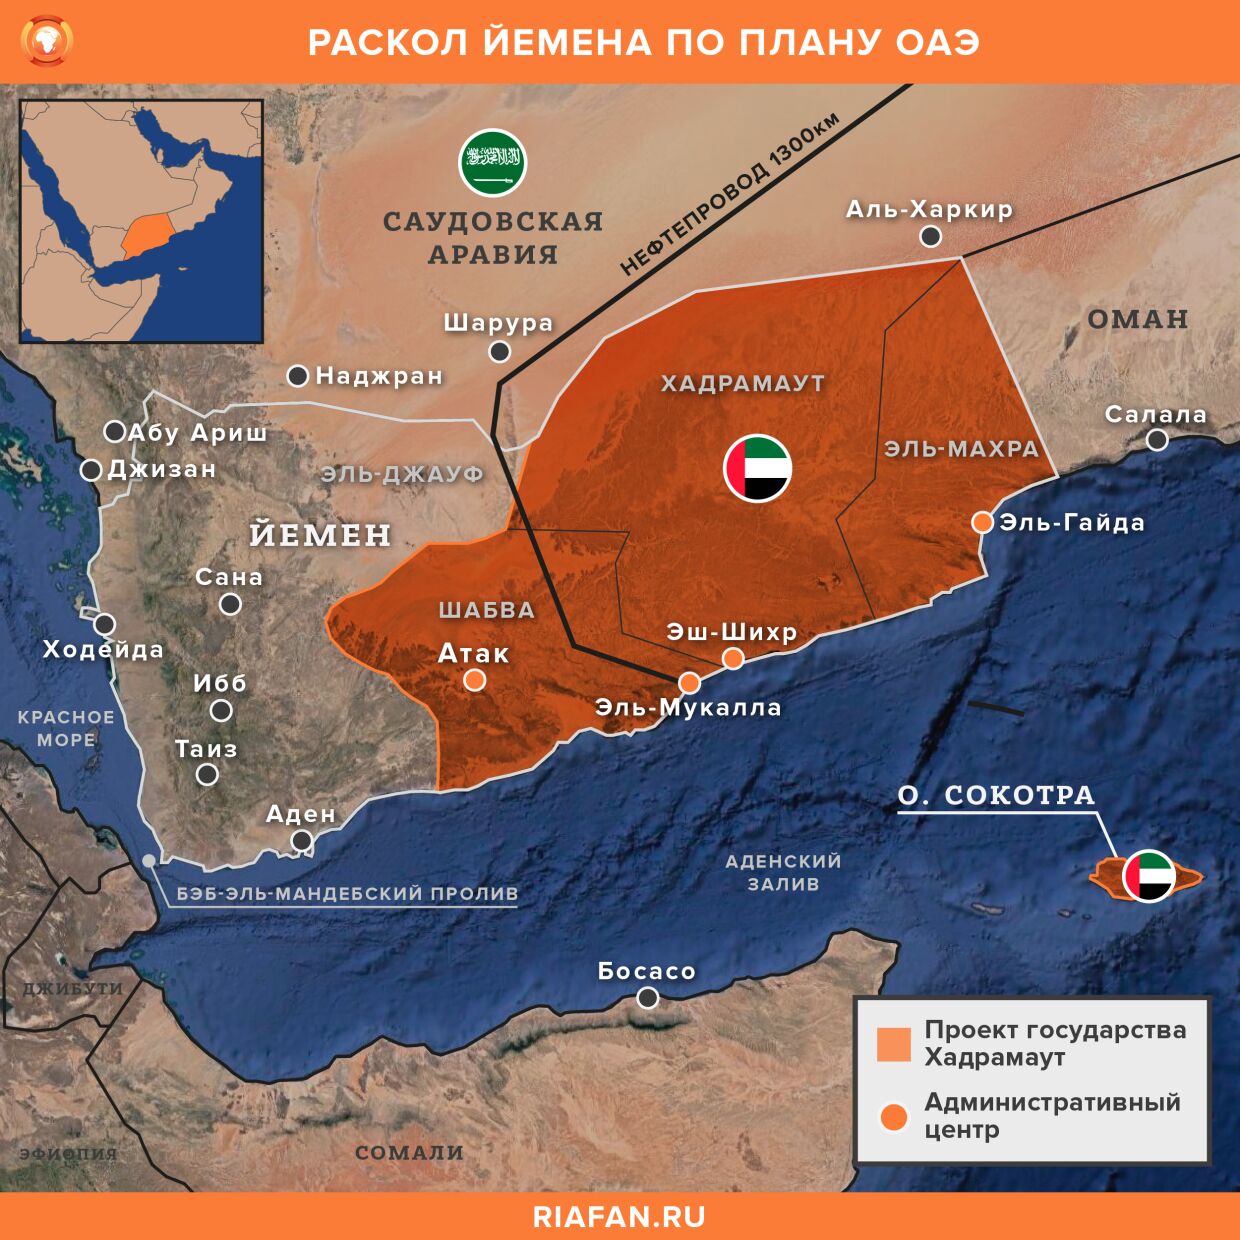 Проект ОАЭ по расколу Йемена